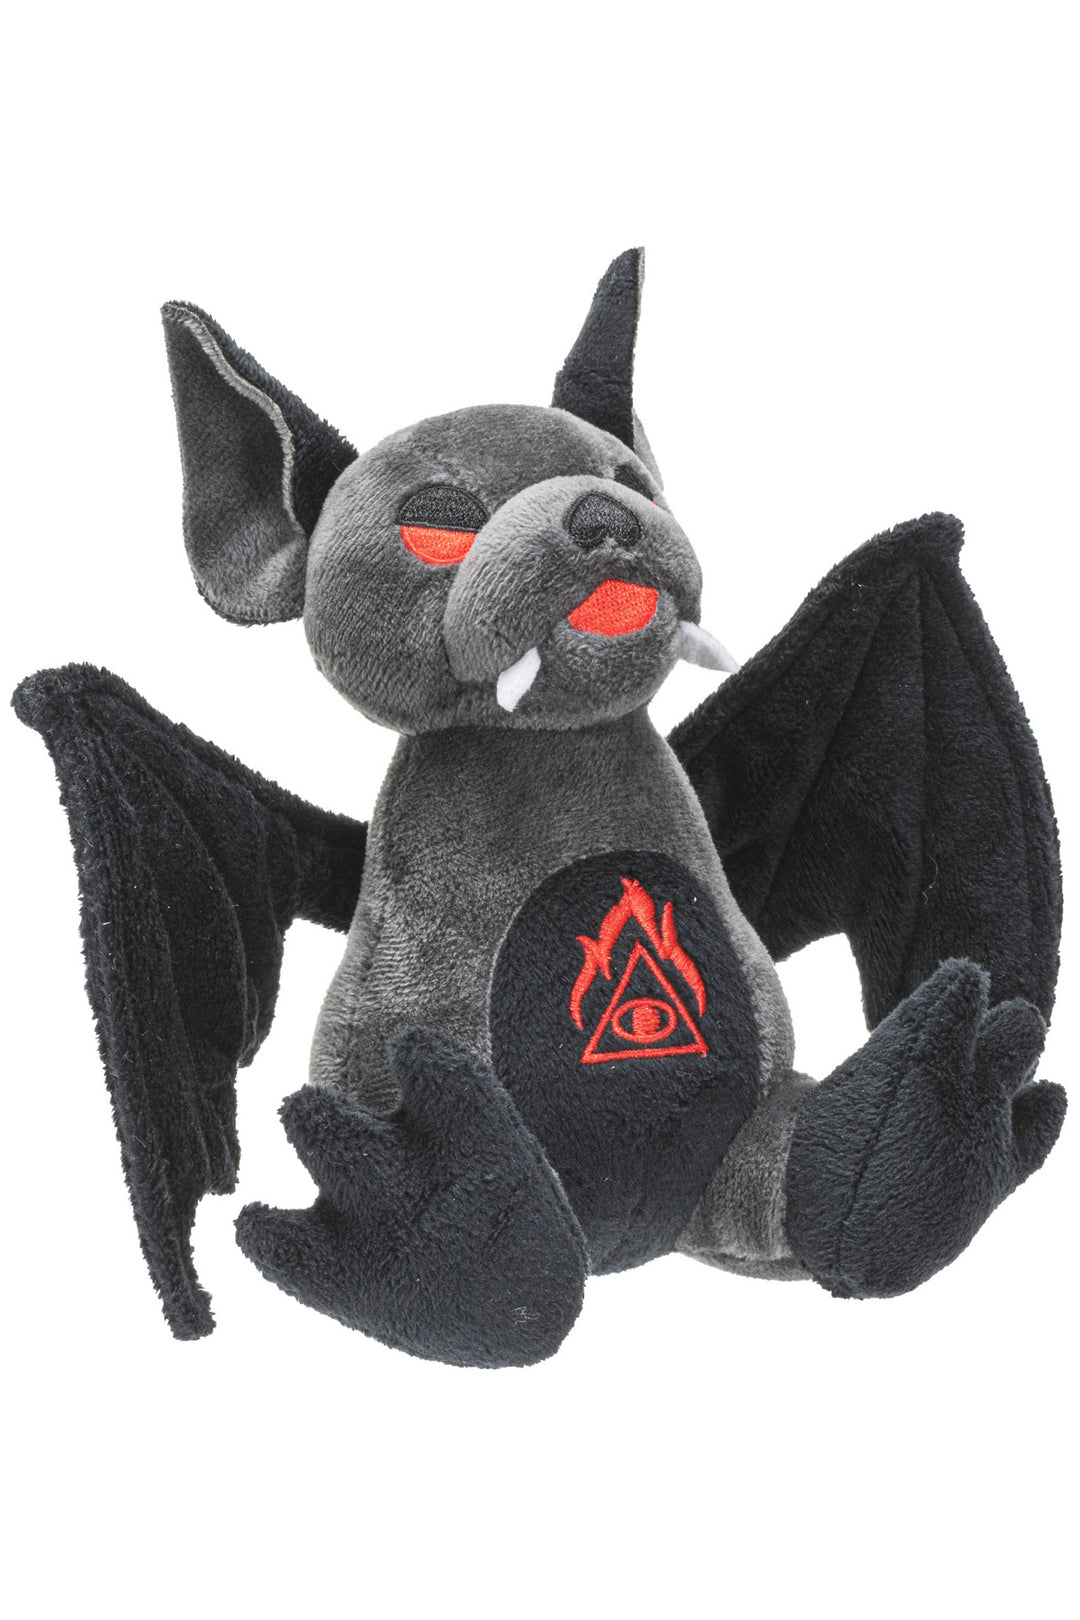 Goth bat plush toy